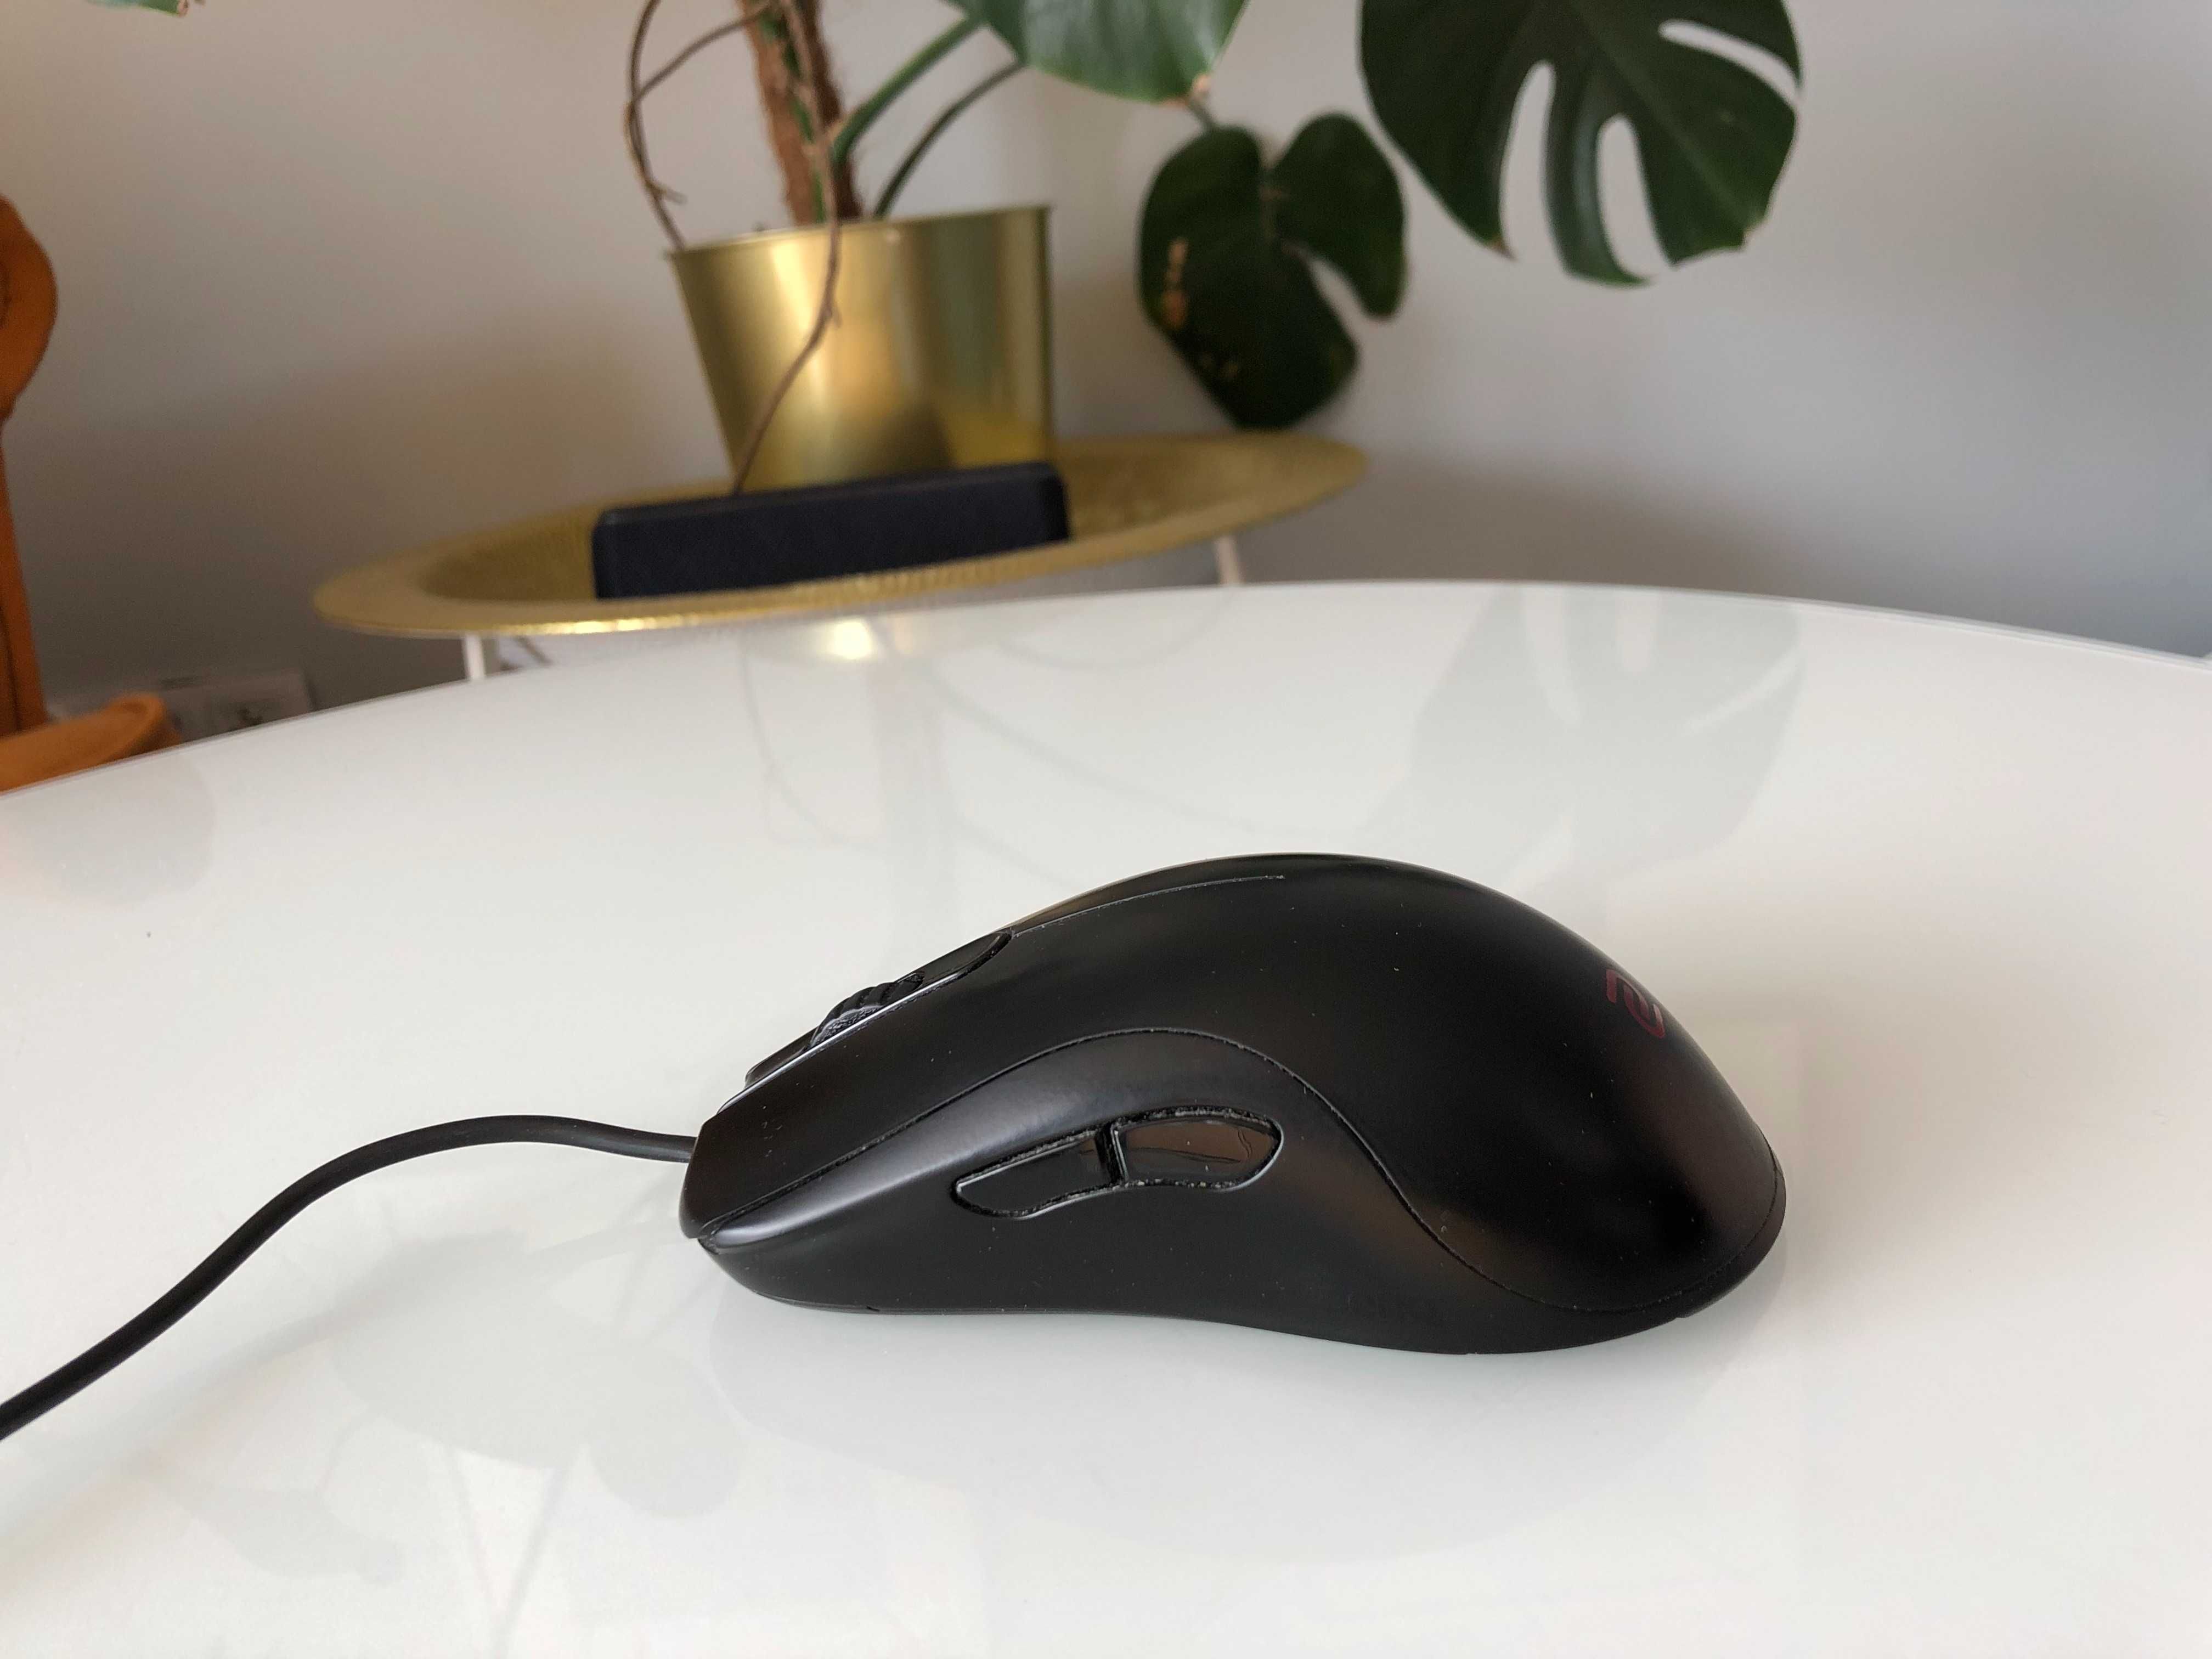 Mysz komputerowa - Zowie ZA11 (Czarna)